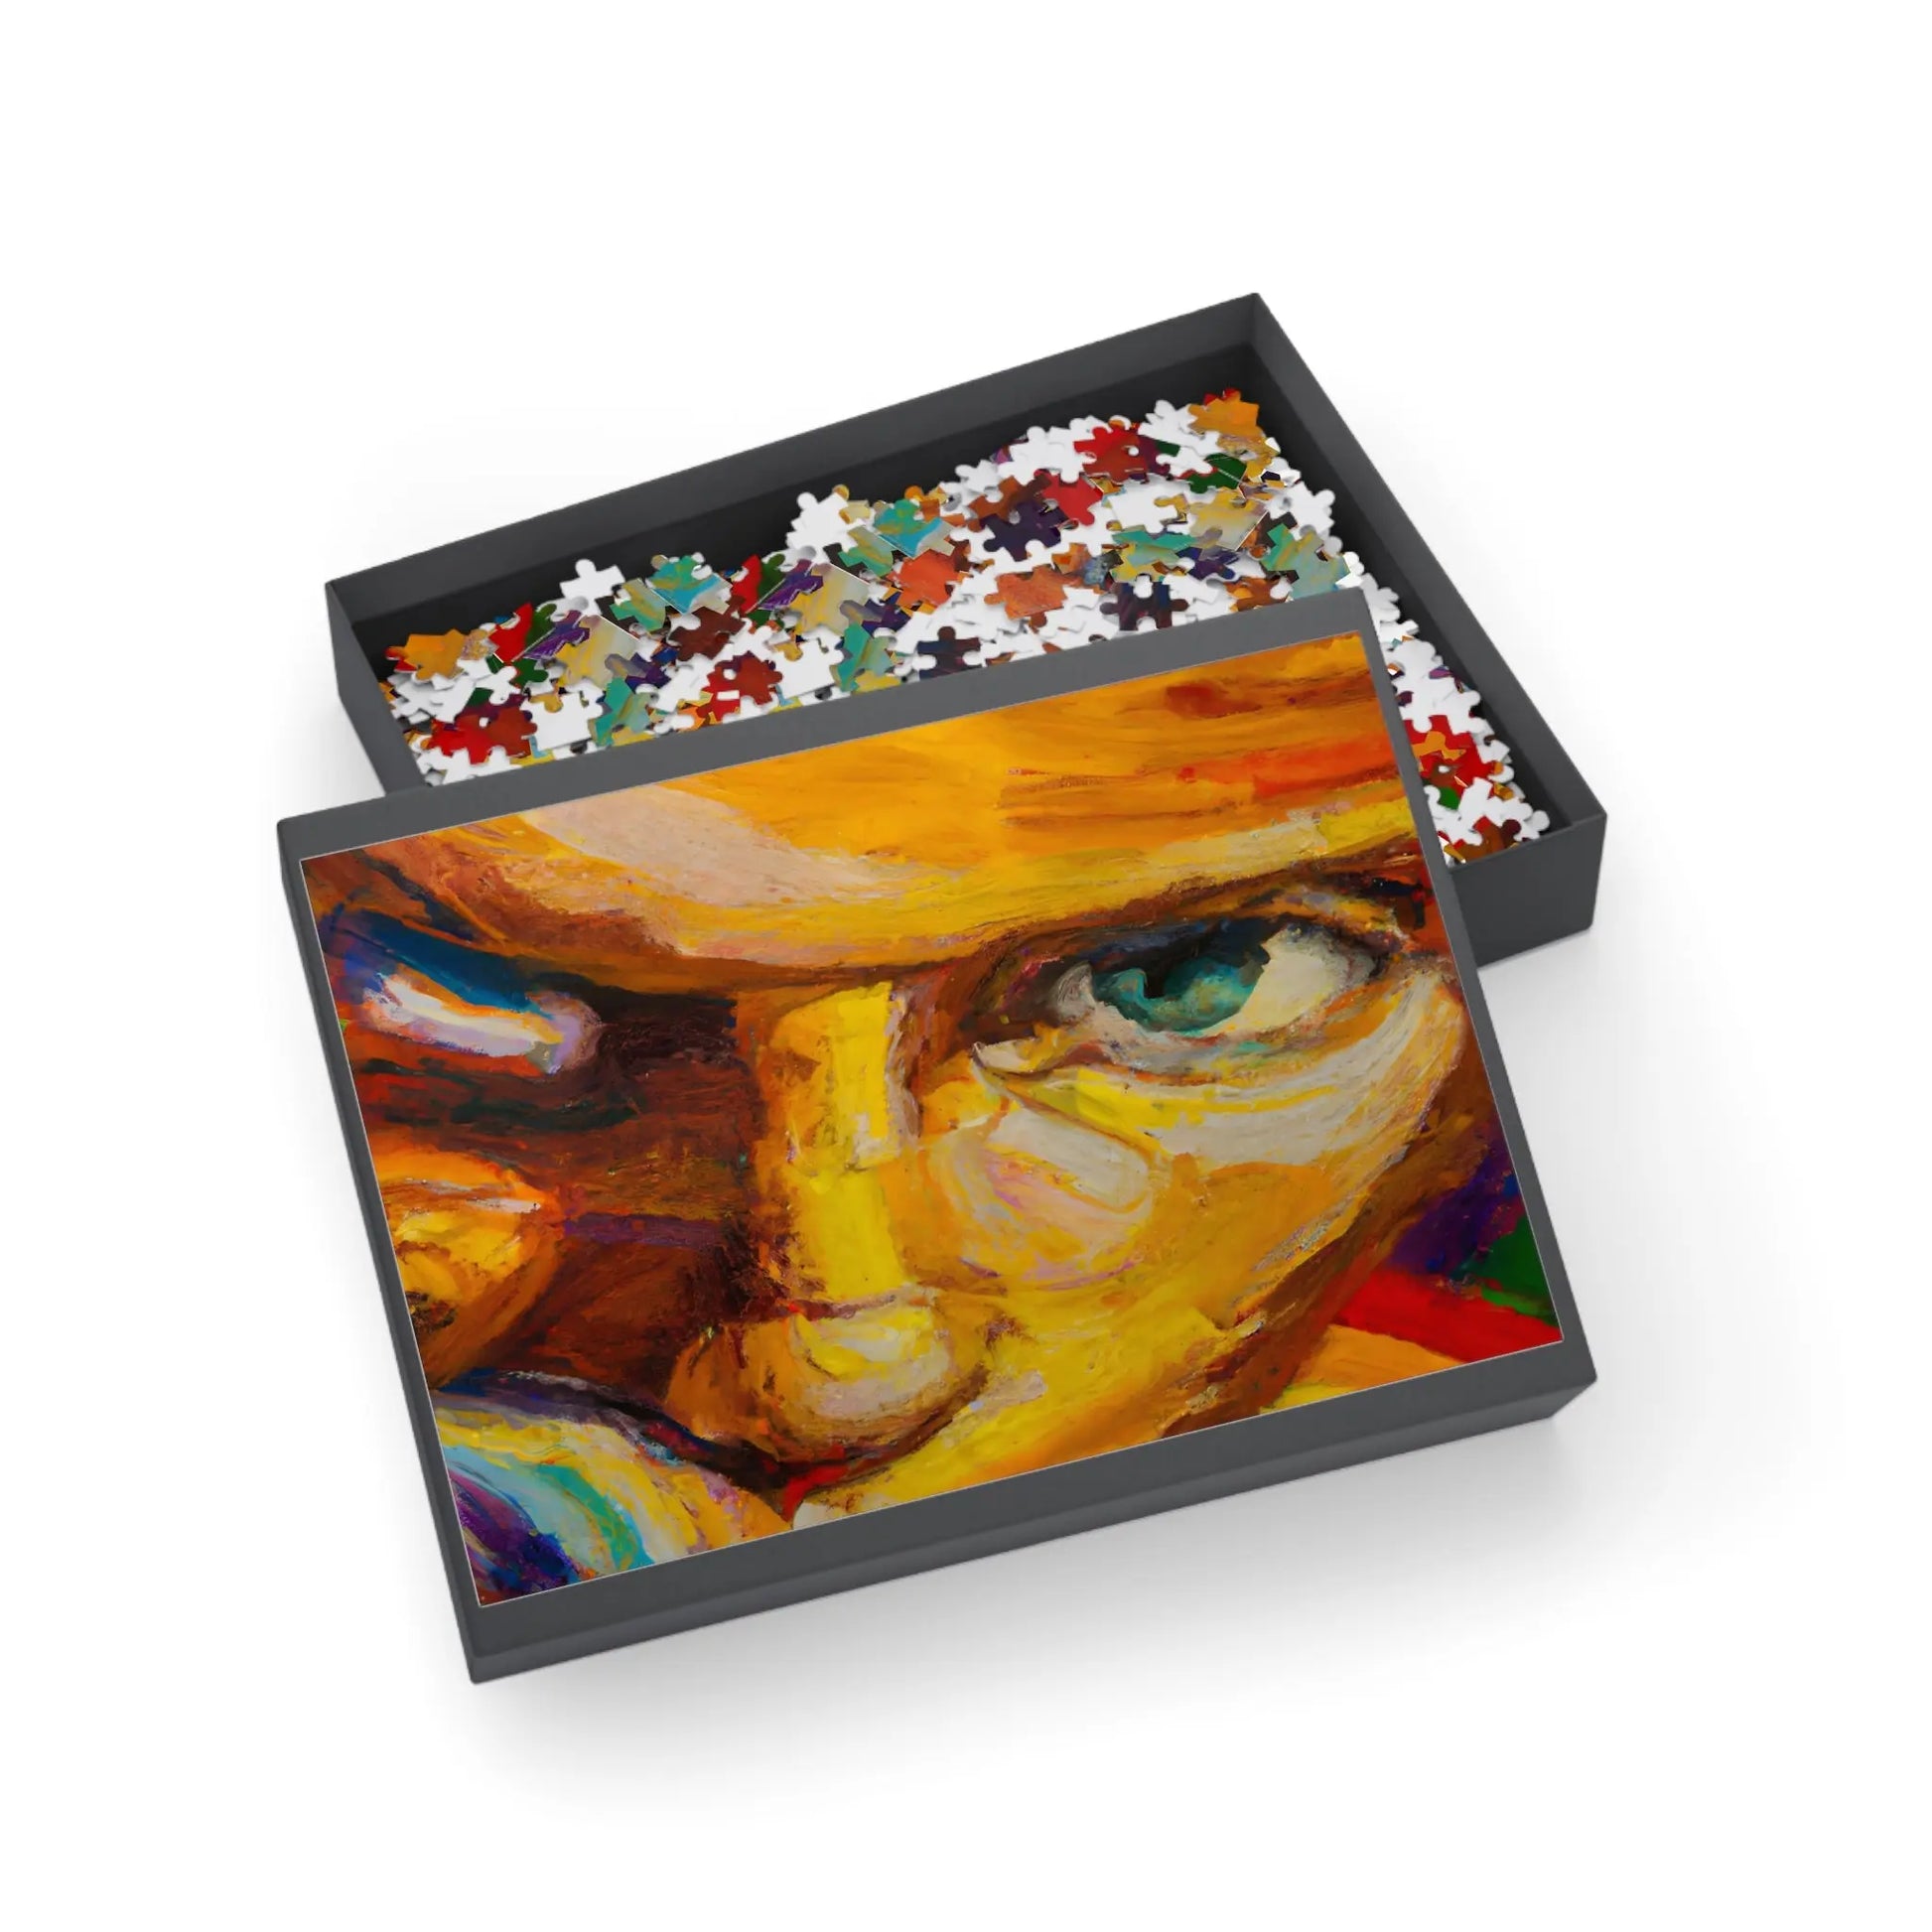 LudovicoVonArturo - LGBTQ-Inspired Jigsaw Puzzle